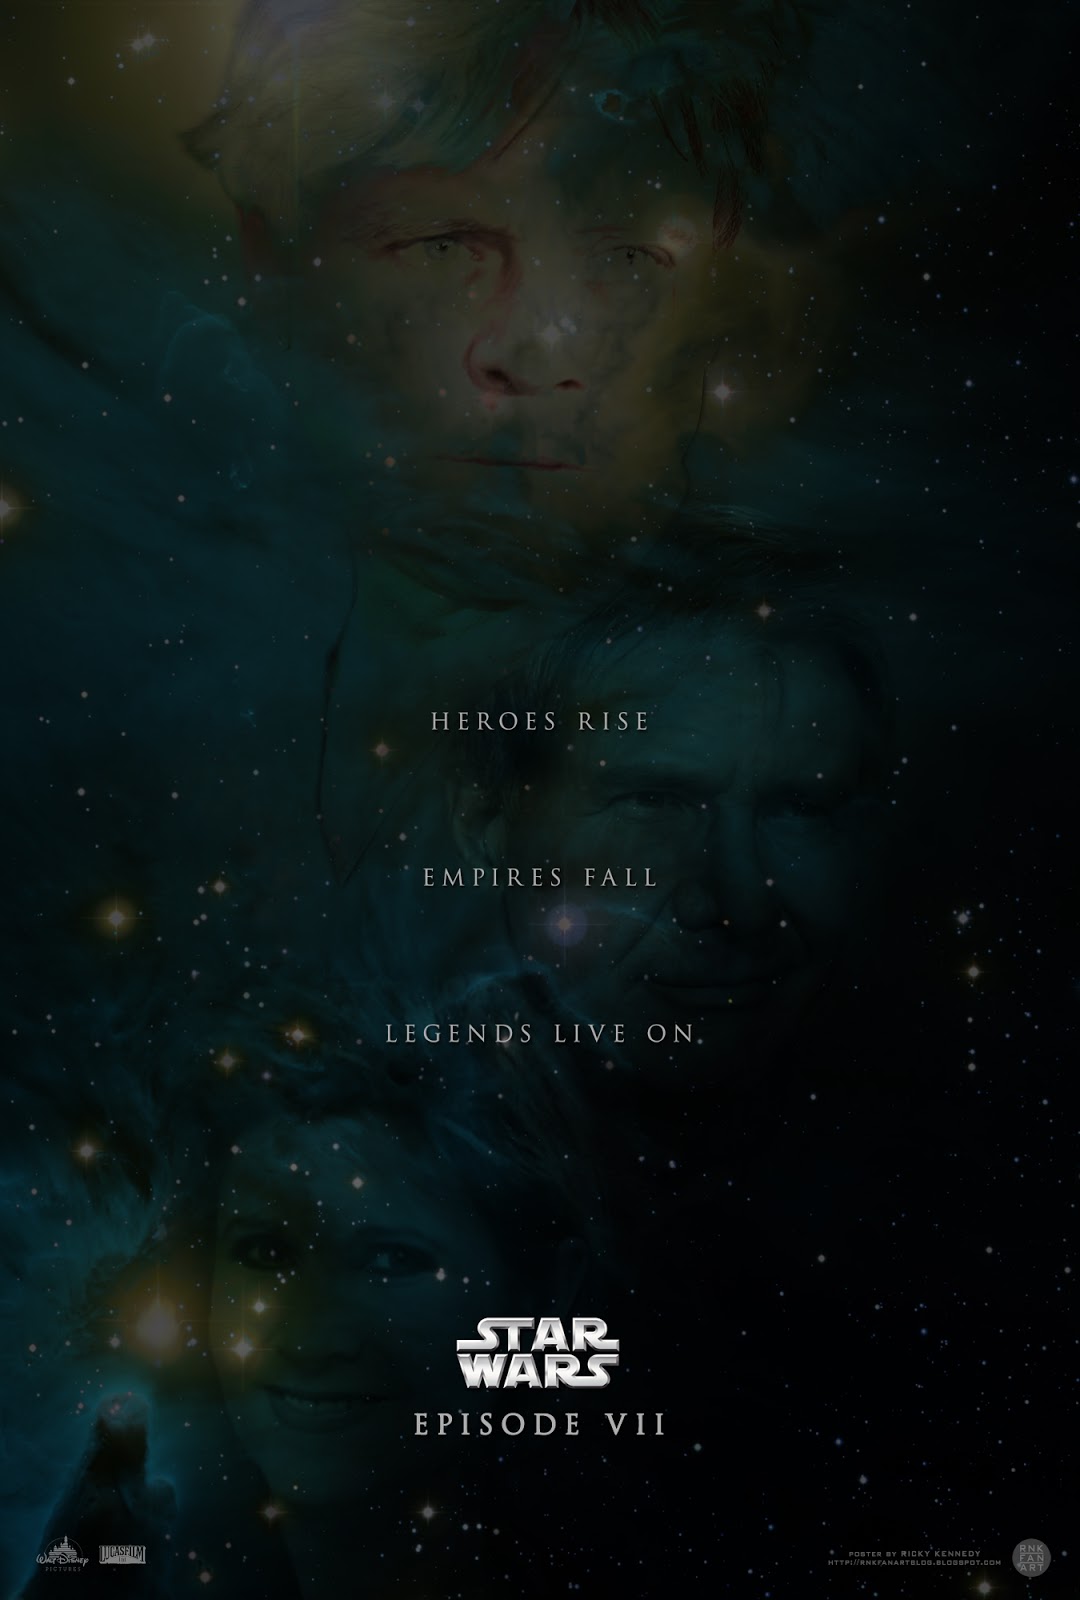 RNK Fan Art Star Wars Episode VII Teaser Poster